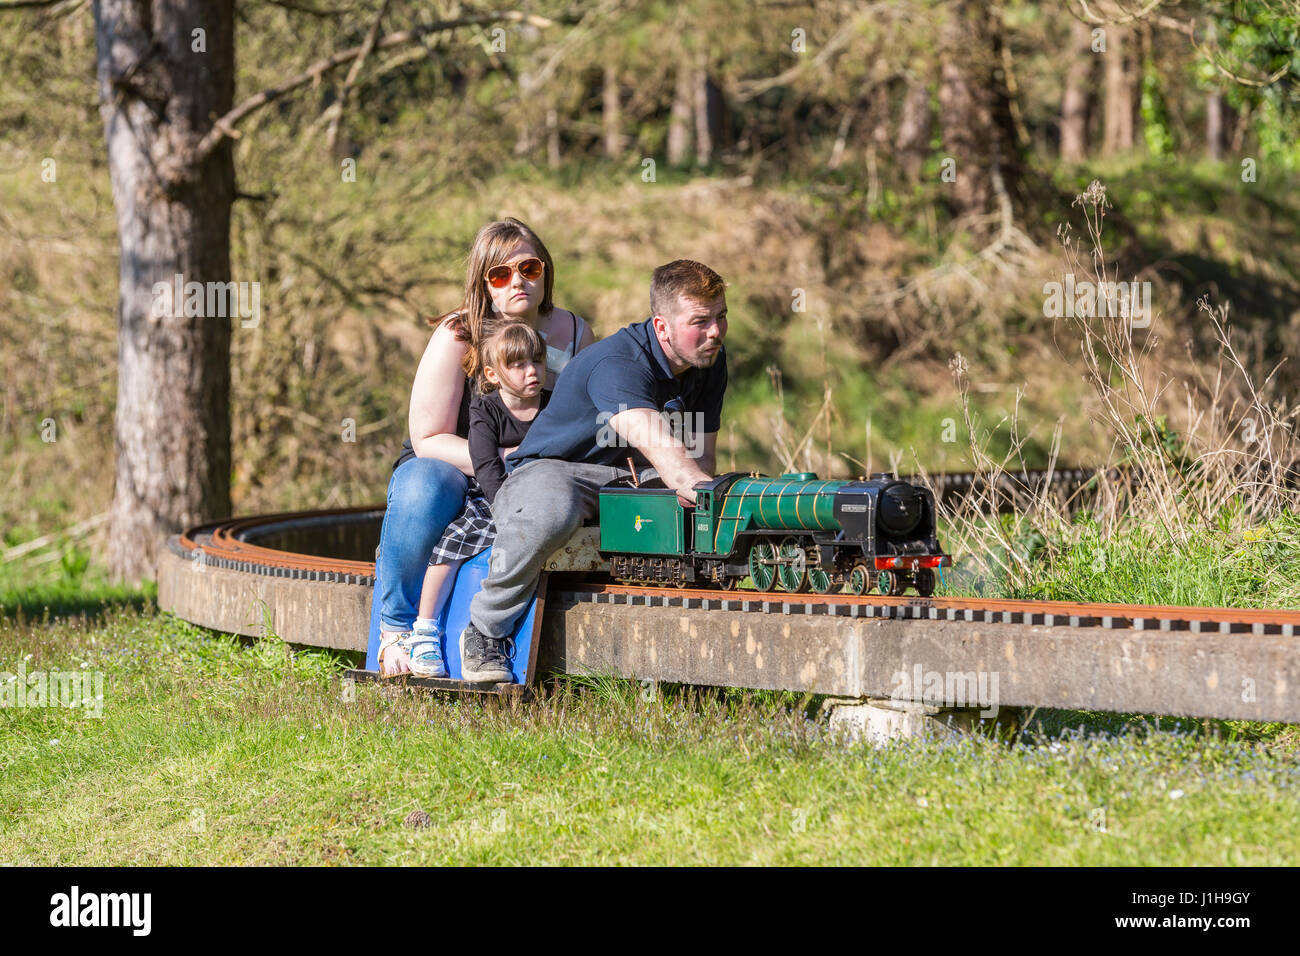 Llanelli & Bezirk Modell Ingenieure Frühjahr Rallye auf die erhöhte und Boden-Miniatur-Eisenbahn zu verfolgen, an Pembrey Country Park, Wales, UK Stockfoto